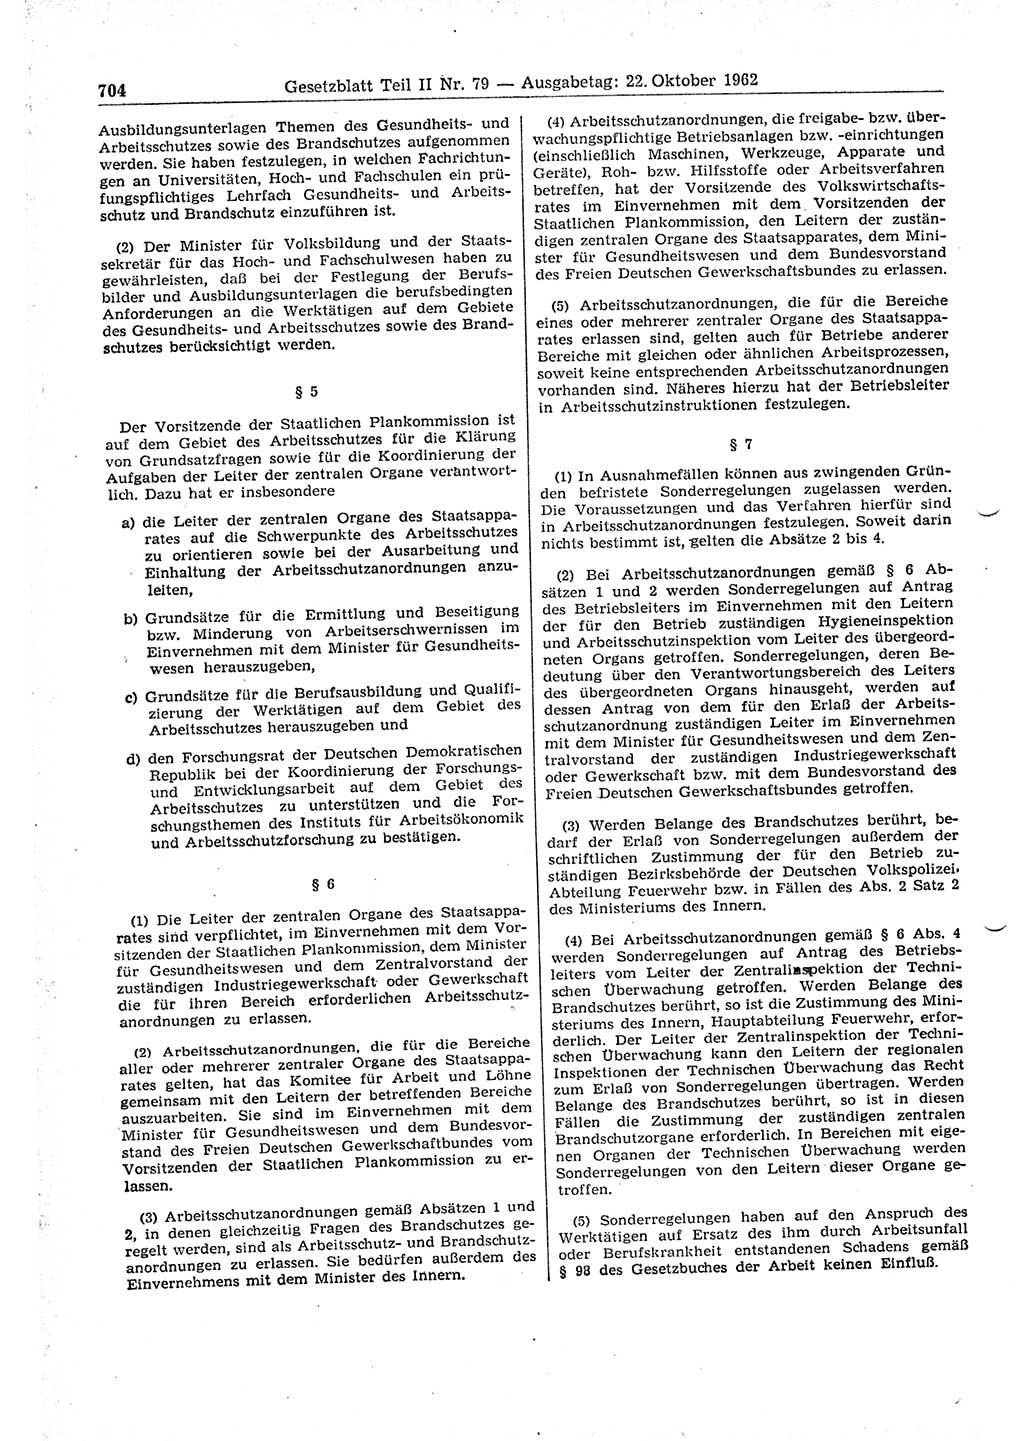 Gesetzblatt (GBl.) der Deutschen Demokratischen Republik (DDR) Teil ⅠⅠ 1962, Seite 704 (GBl. DDR ⅠⅠ 1962, S. 704)